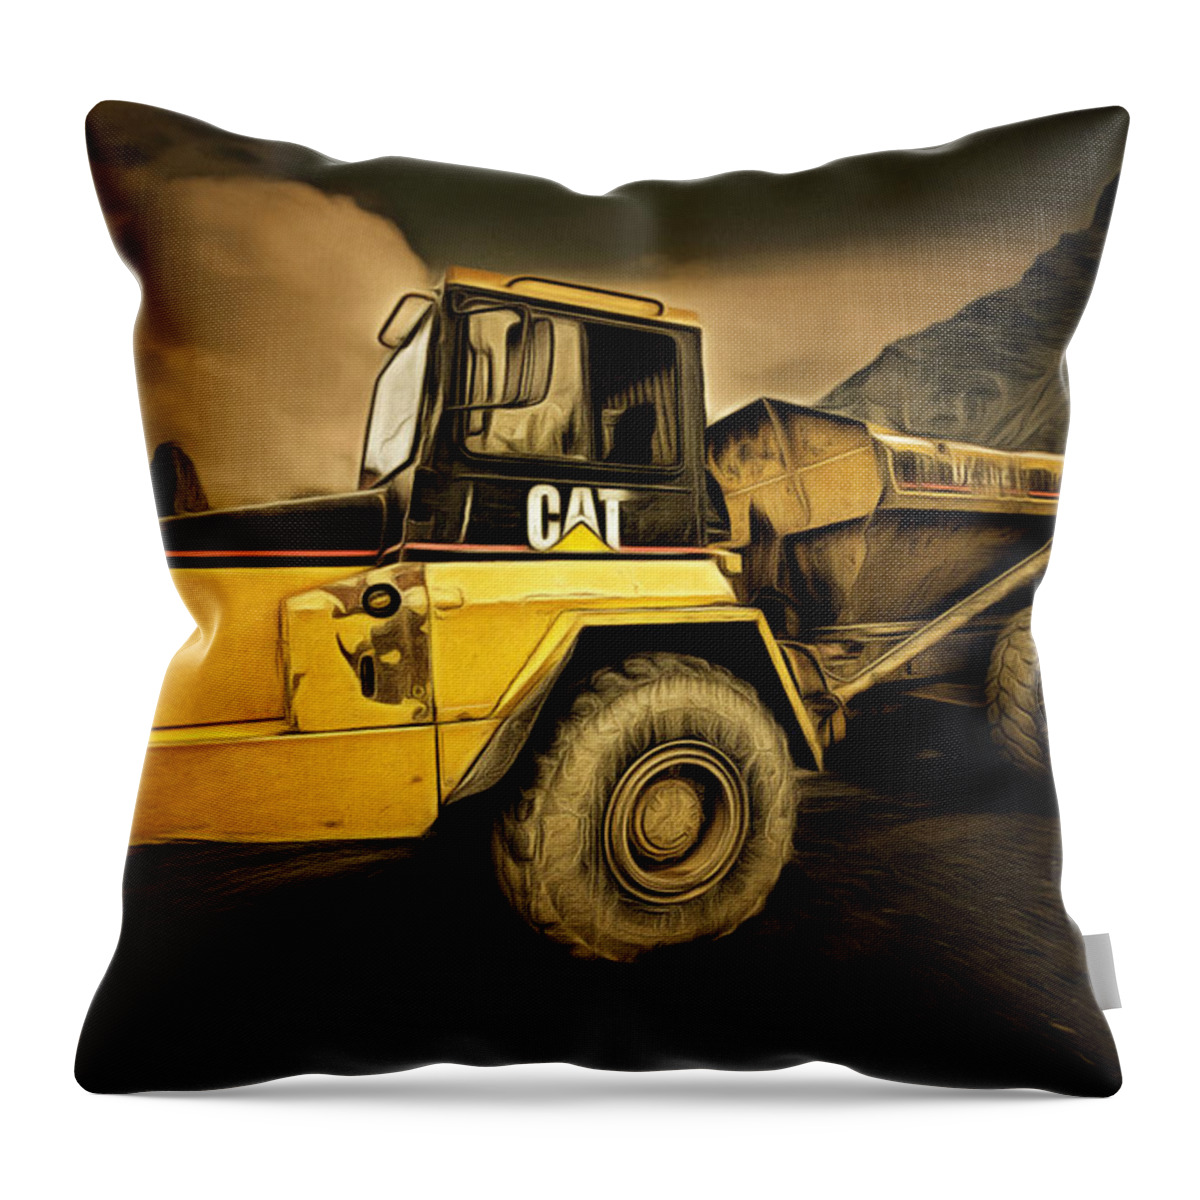 Caterpillar Throw Pillow featuring the photograph Dan Creek Rock Truck by Fred Denner